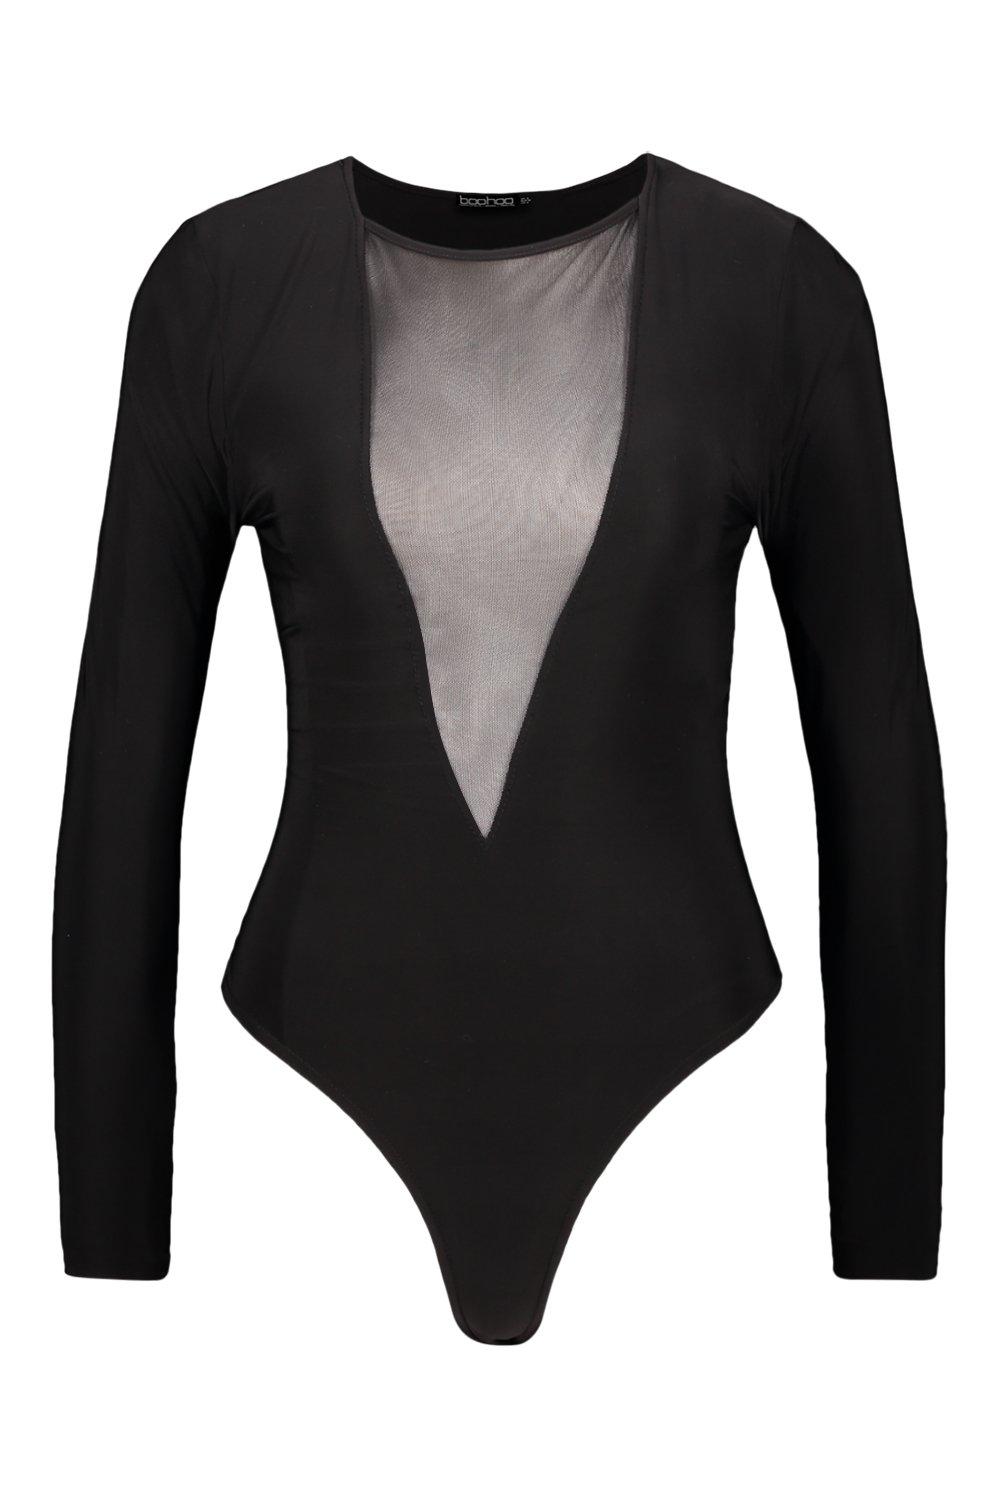 Avidlove Womens Mesh Bodysuit Black Long Sleeve Bodysuit Round